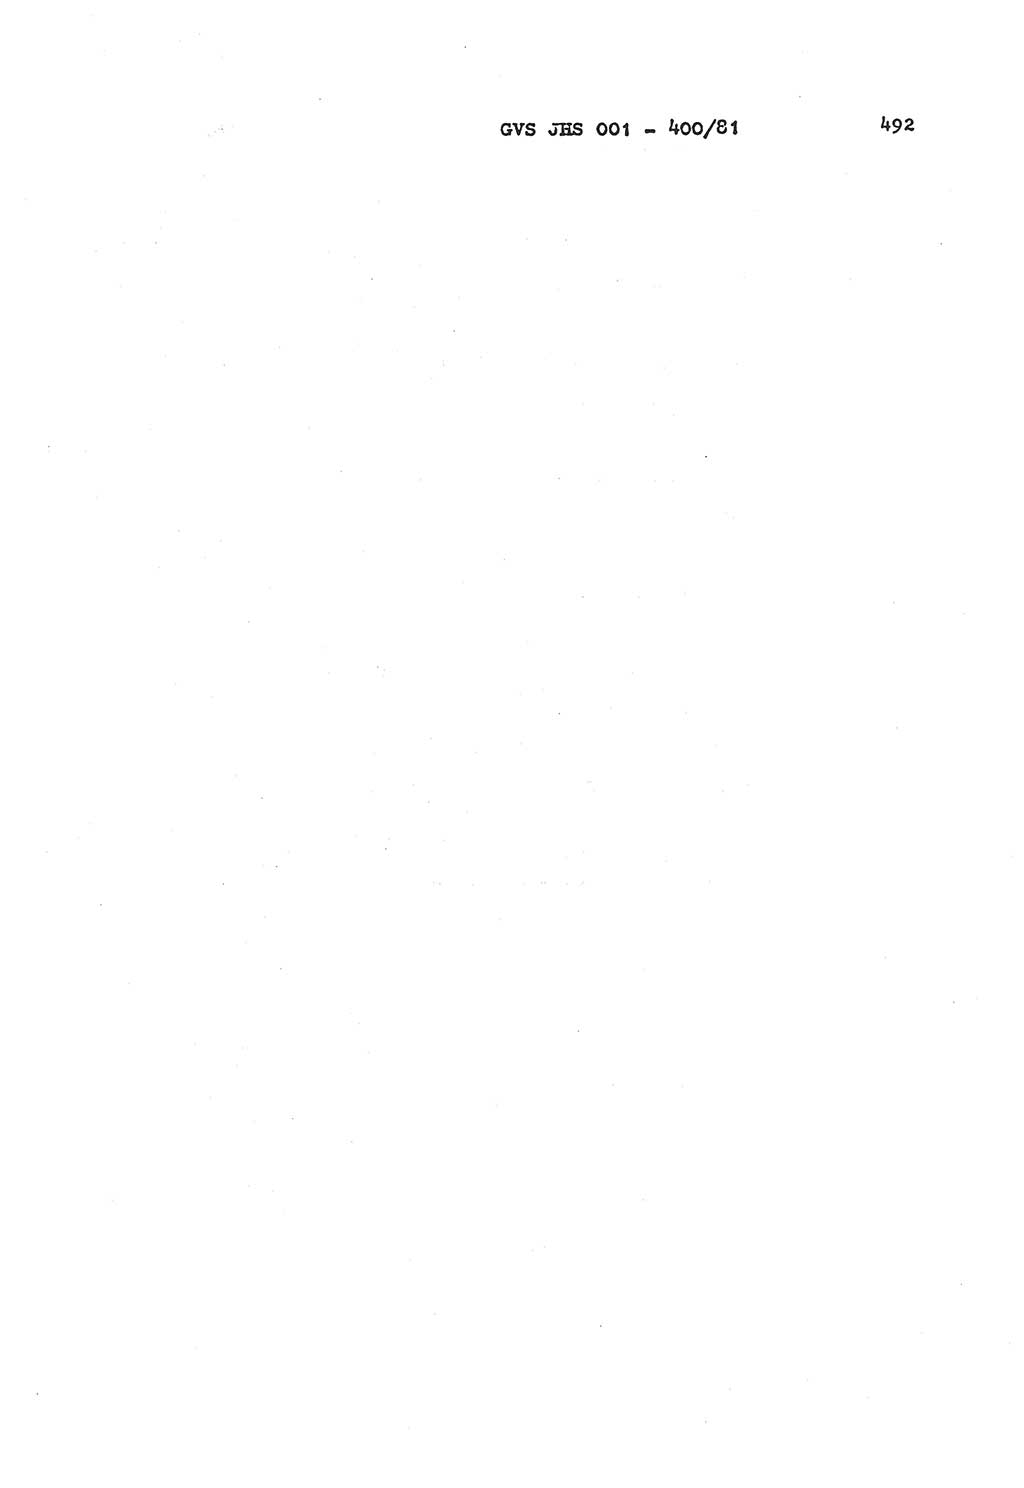 Wörterbuch der politisch-operativen Arbeit, Ministerium für Staatssicherheit (MfS) [Deutsche Demokratische Republik (DDR)], Juristische Hochschule (JHS), Geheime Verschlußsache (GVS) o001-400/81, Potsdam 1985, Blatt 492 (Wb. pol.-op. Arb. MfS DDR JHS GVS o001-400/81 1985, Bl. 492)